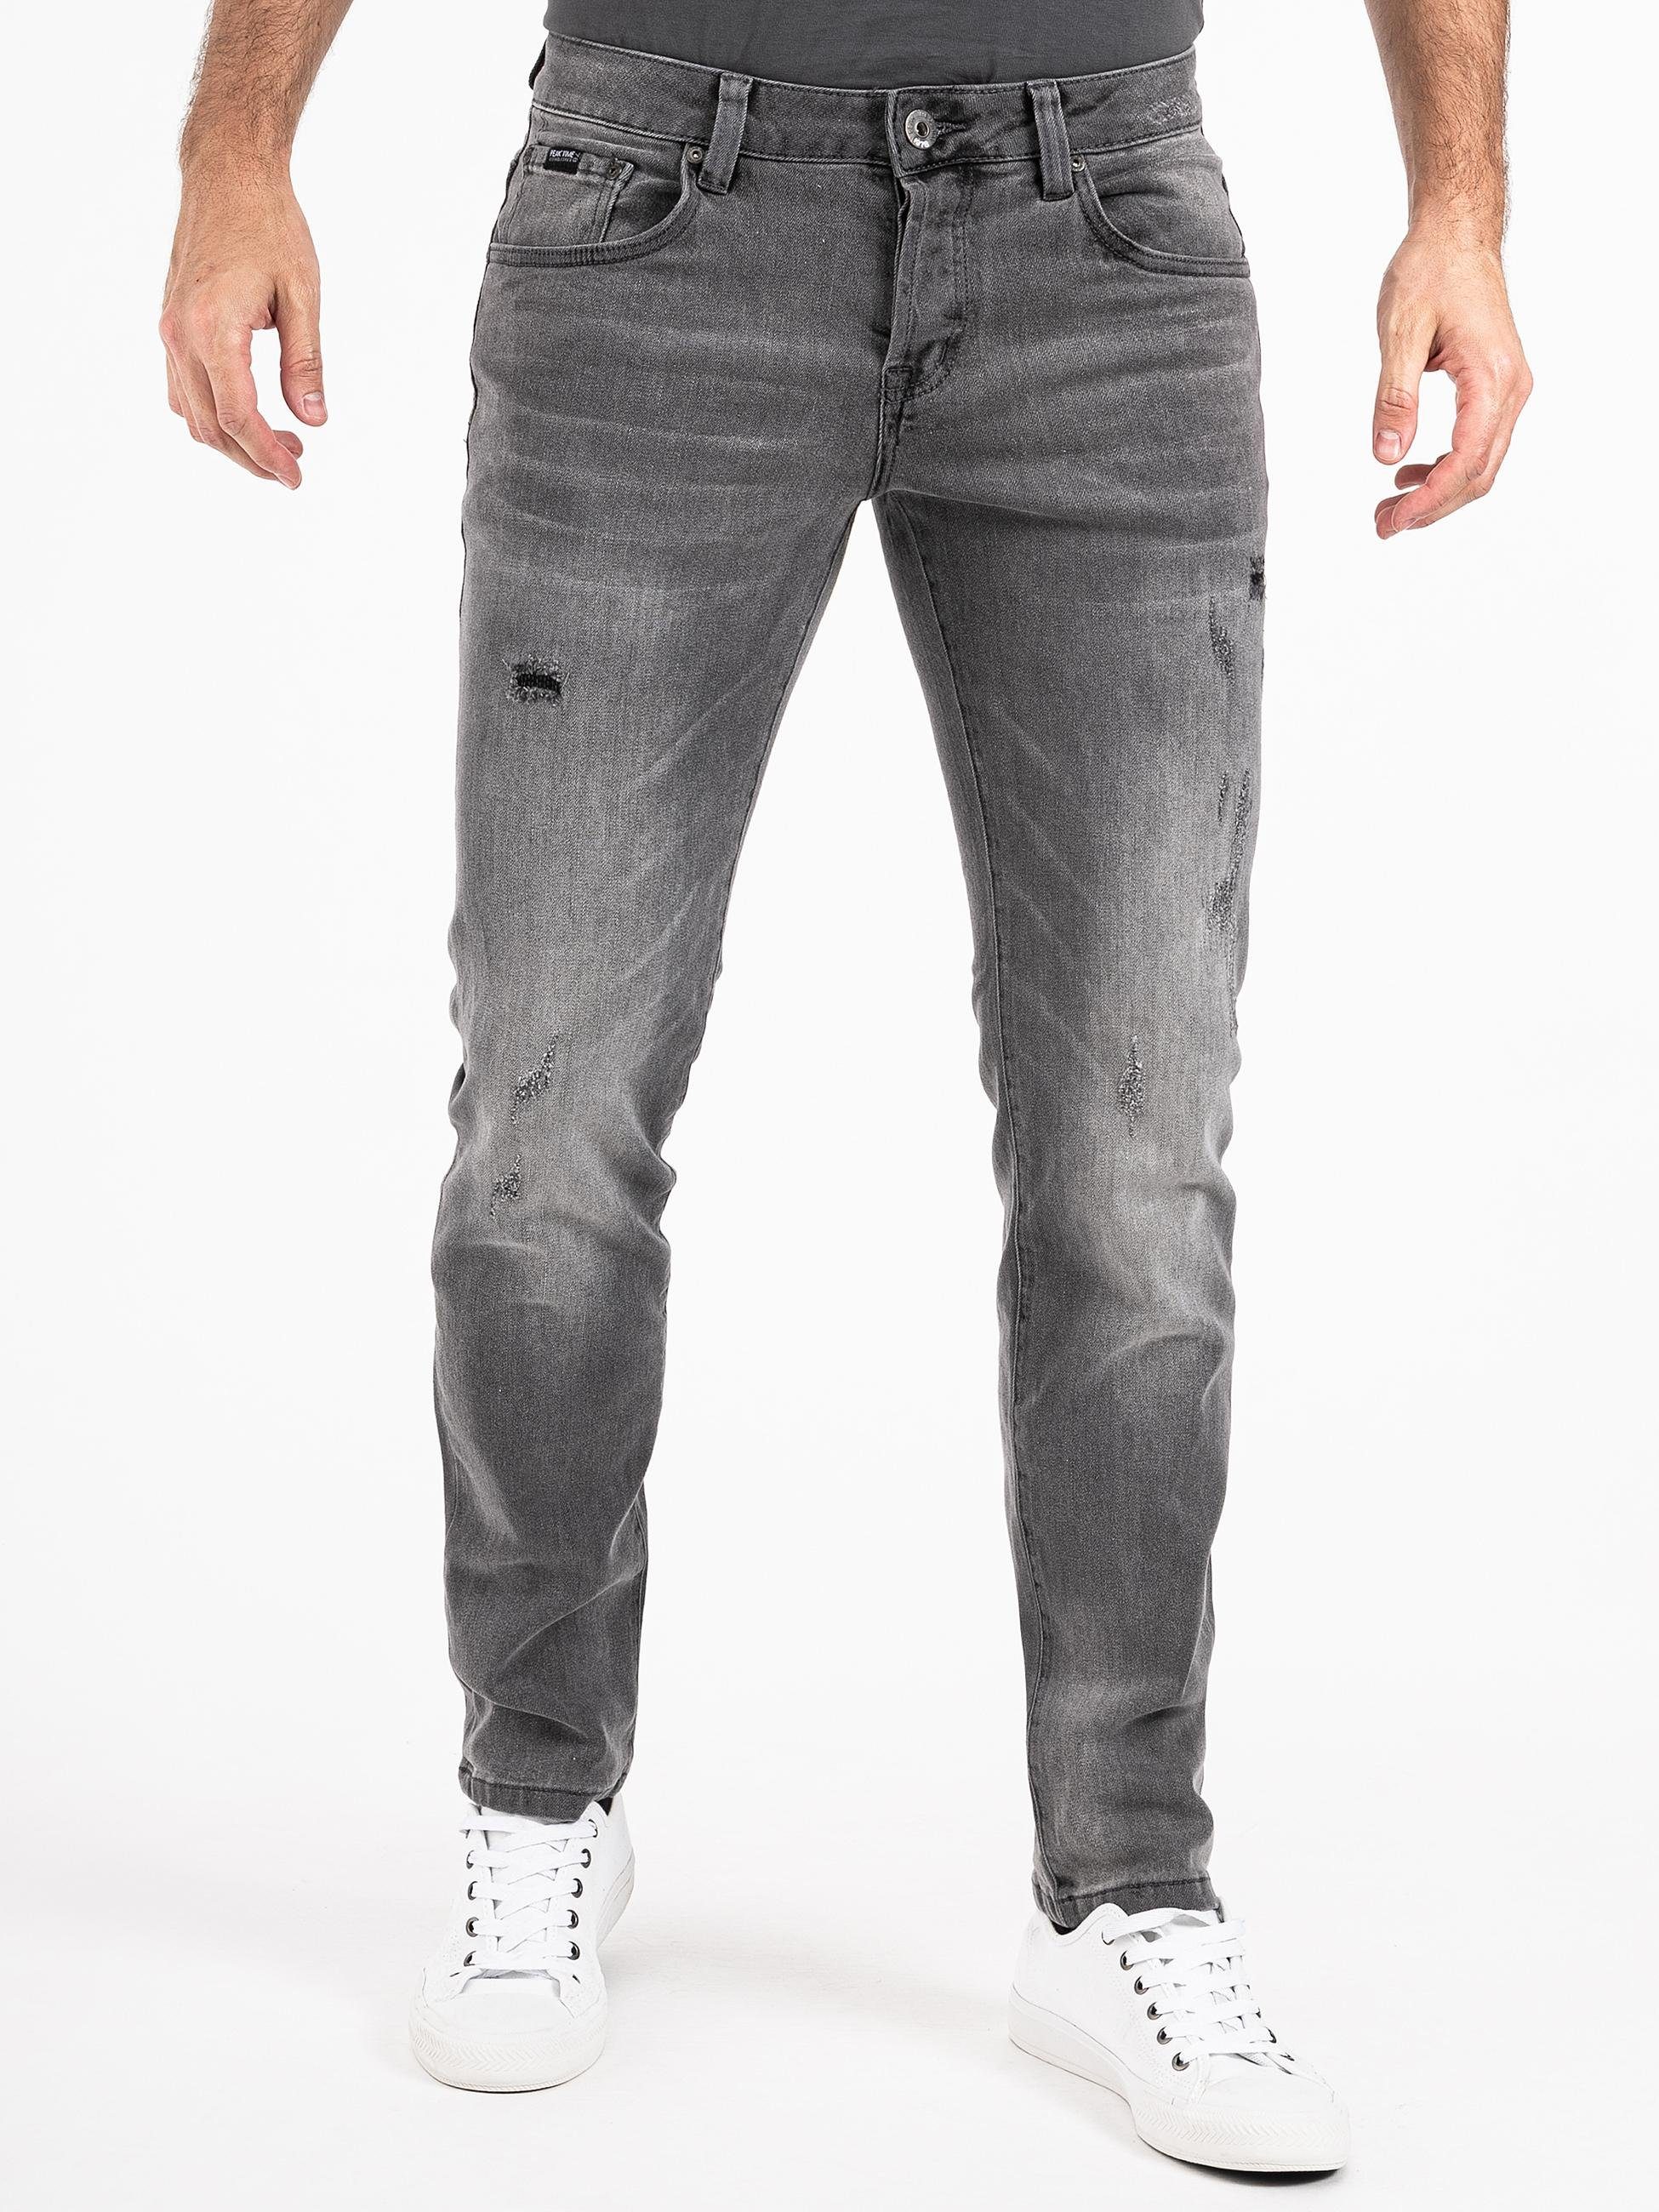 PEAK TIME Slim-fit-Jeans Jeans hellgrau München Herren mit Stretch-Bund Destroyed-Optik und